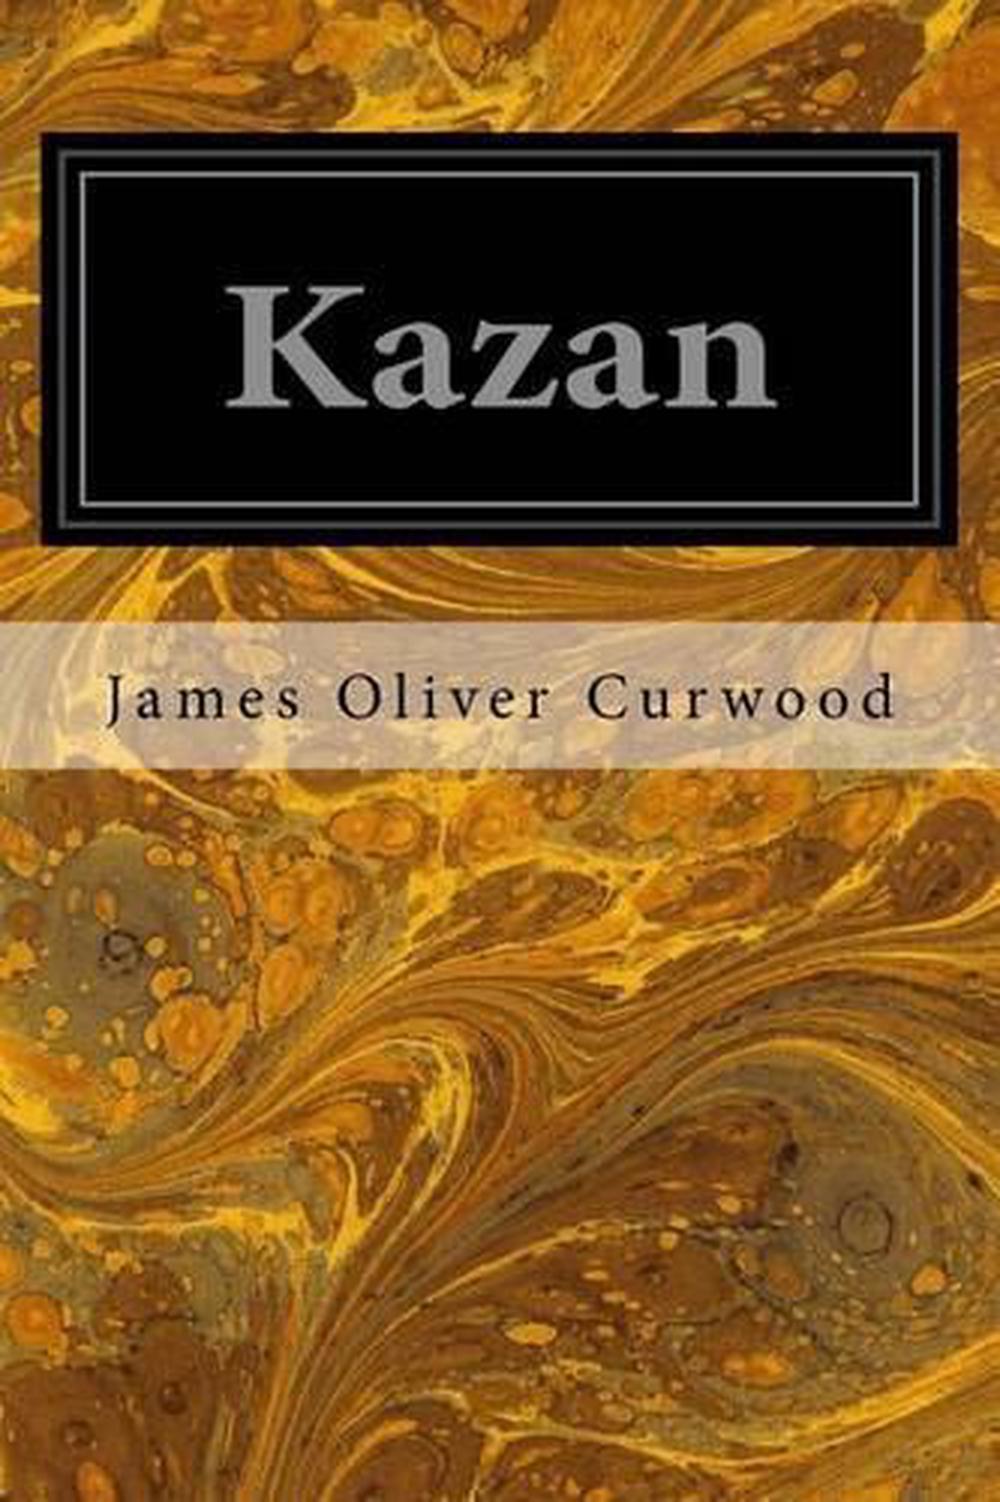 the star of kazan book